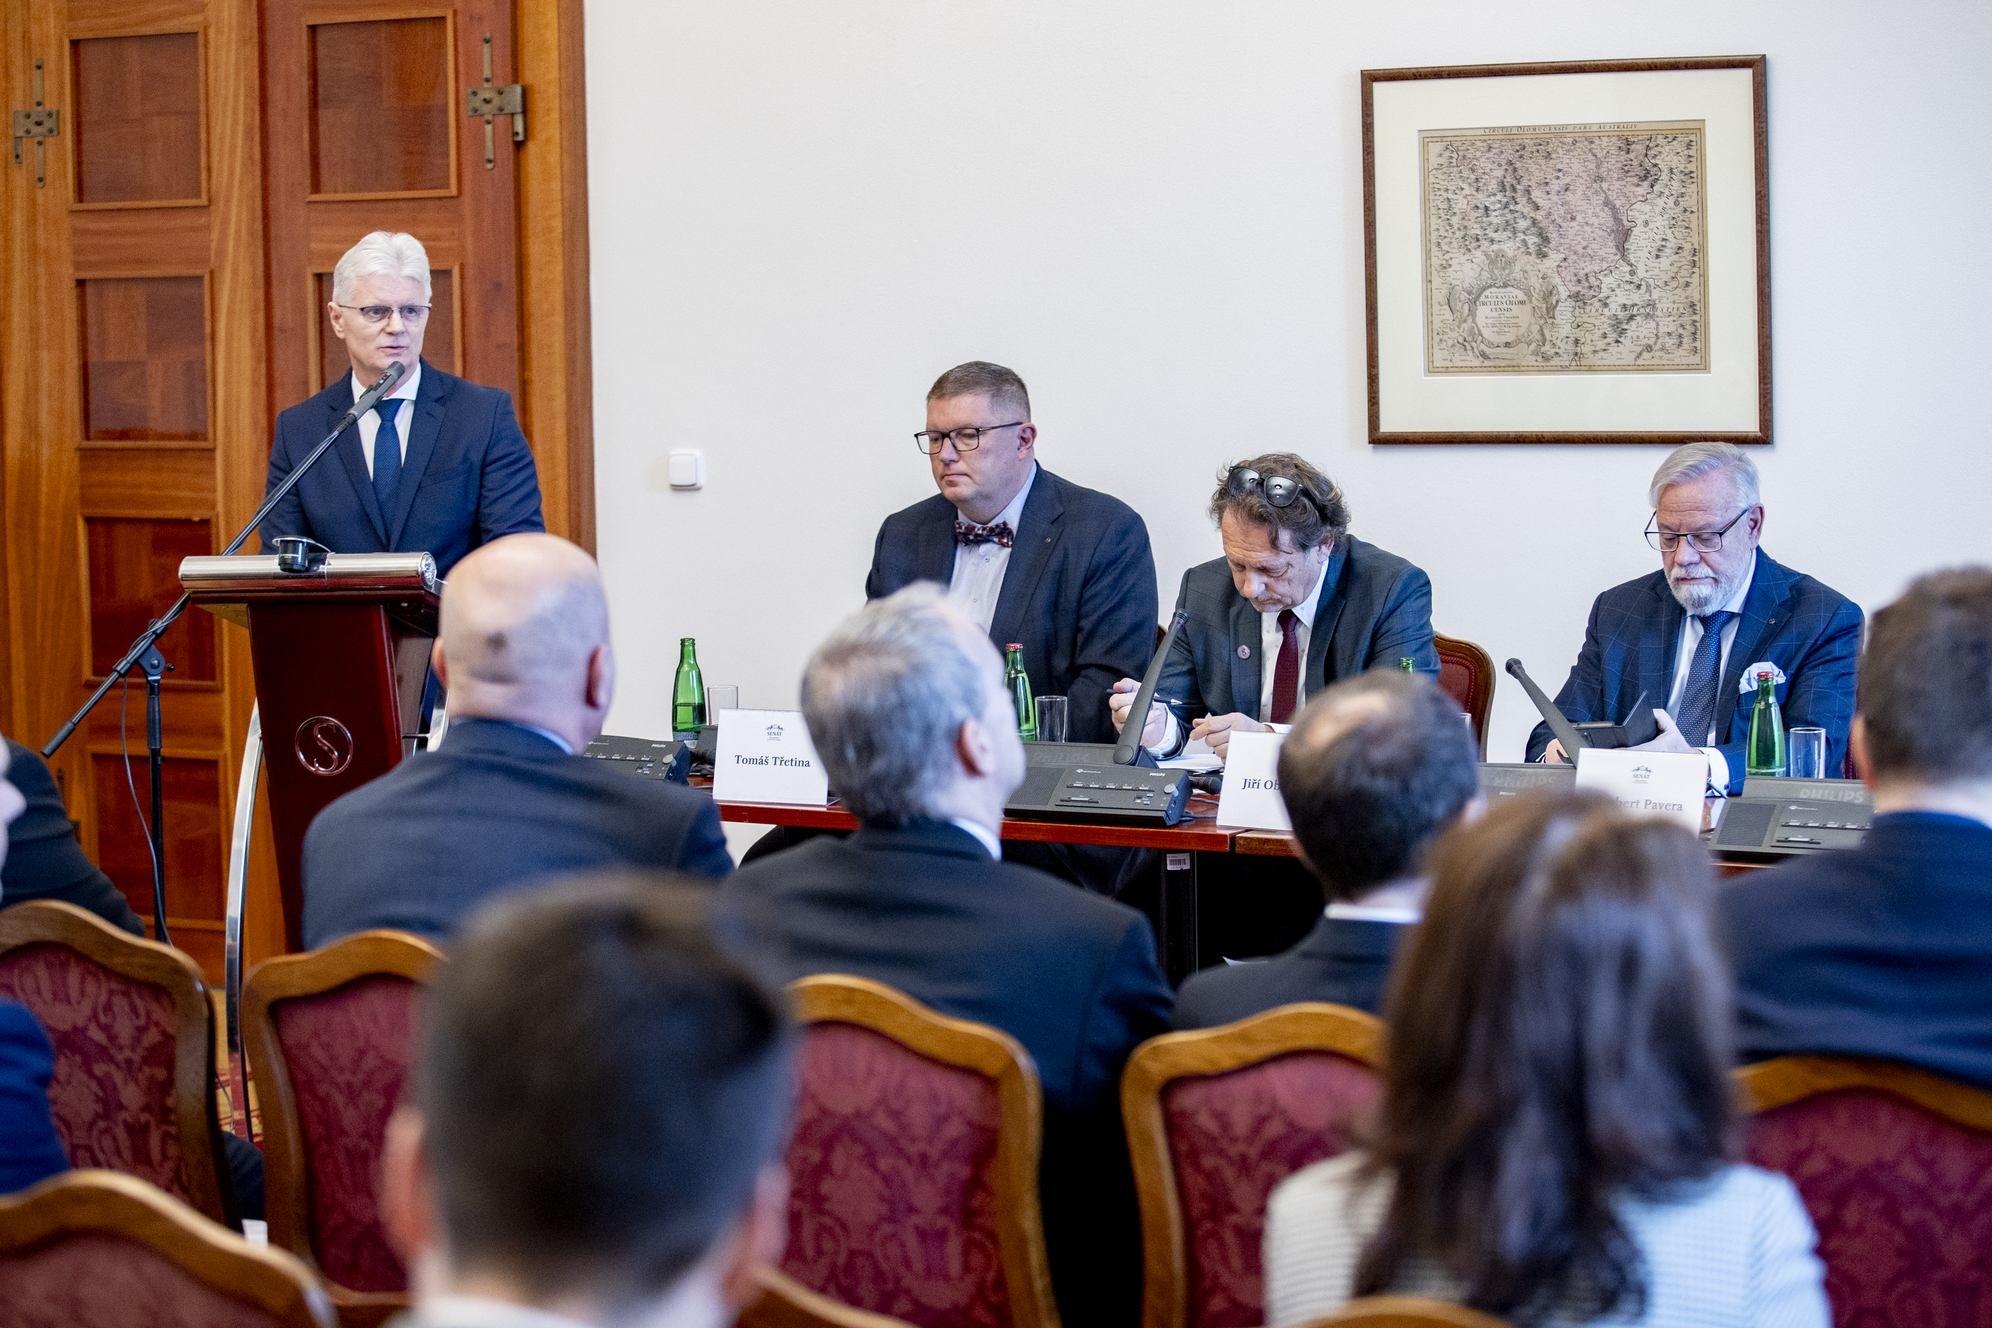 Česko čelí vylidňování obcí a propadu lokální ekonomiky, shodli se na tom řečníci na konferenci v Senátu